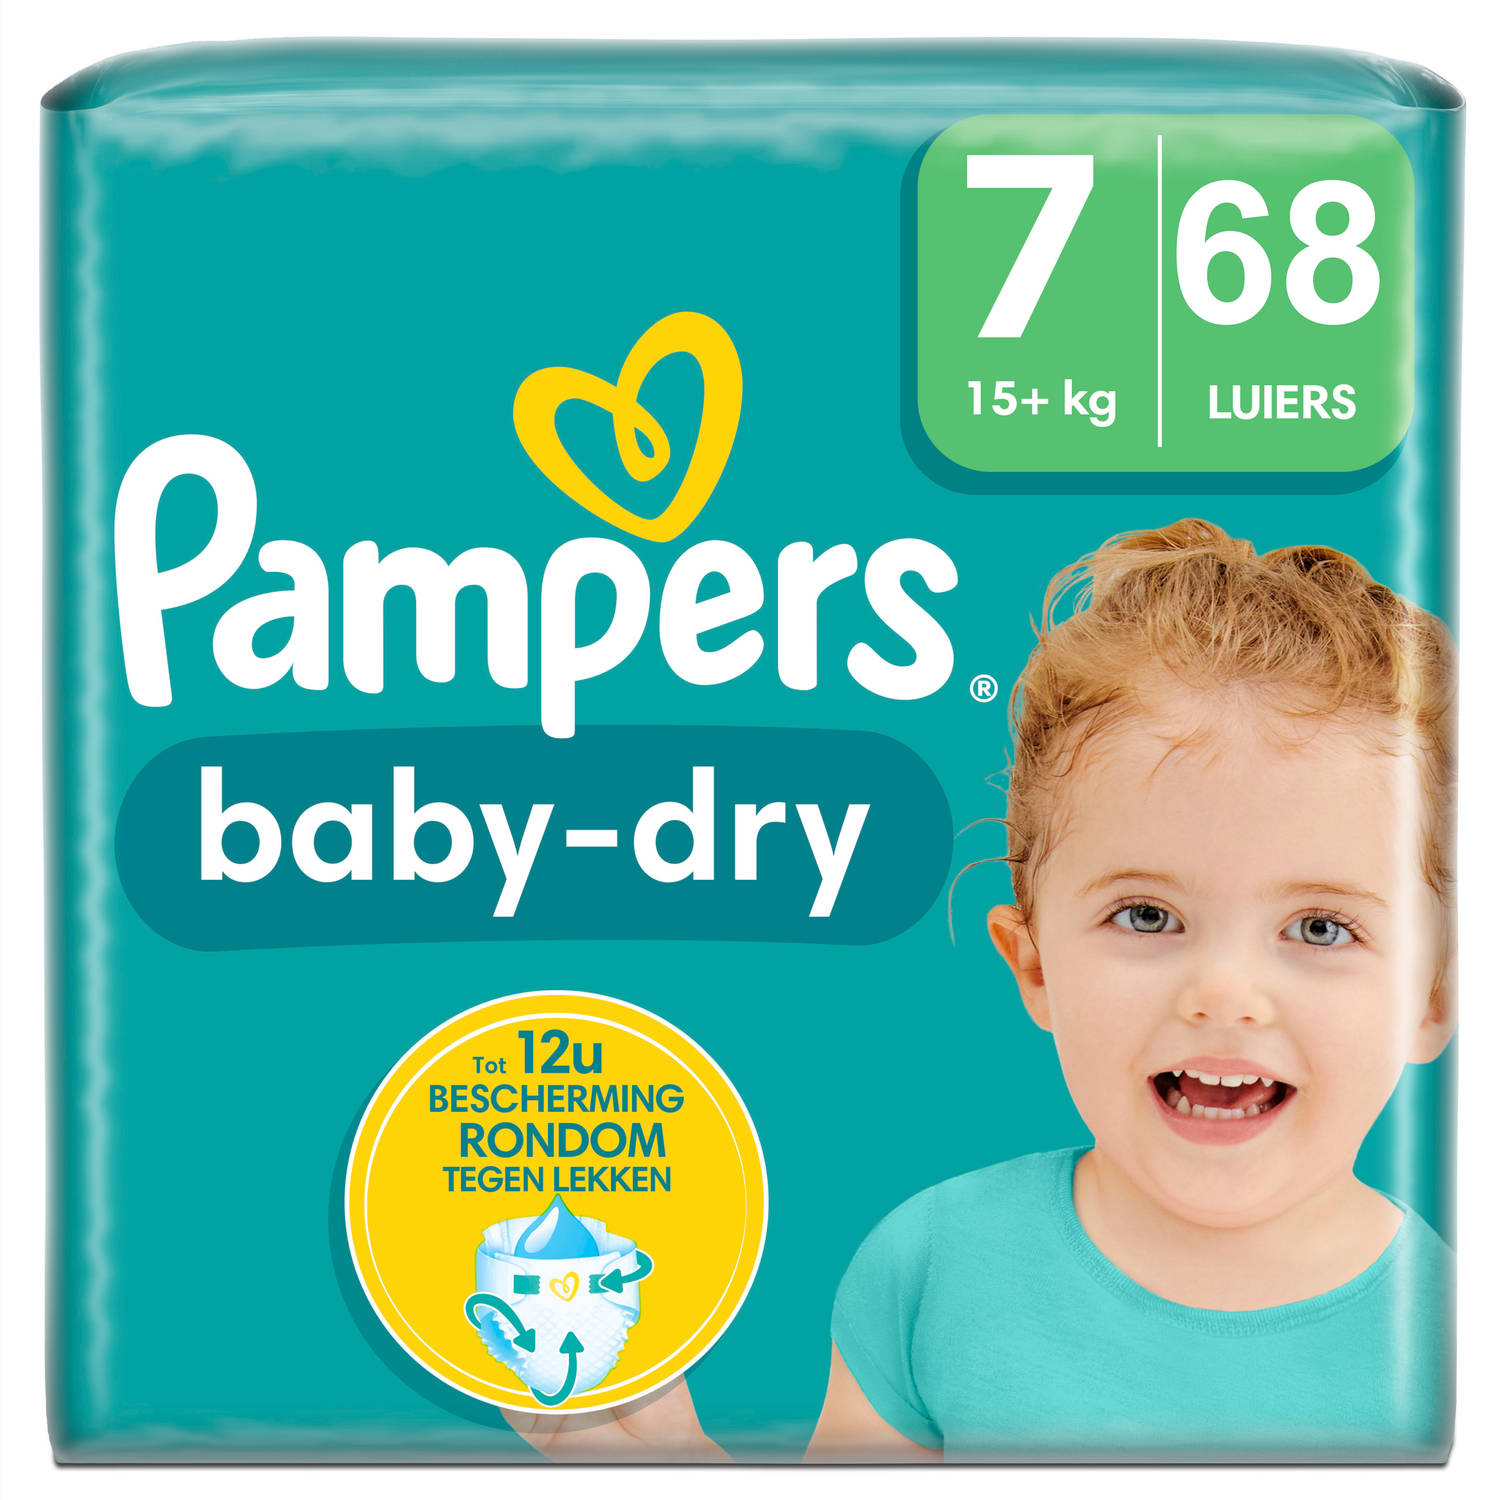 Pampers Baby Dry Maat 7 Mega Pack 68 stuks 15+ KG